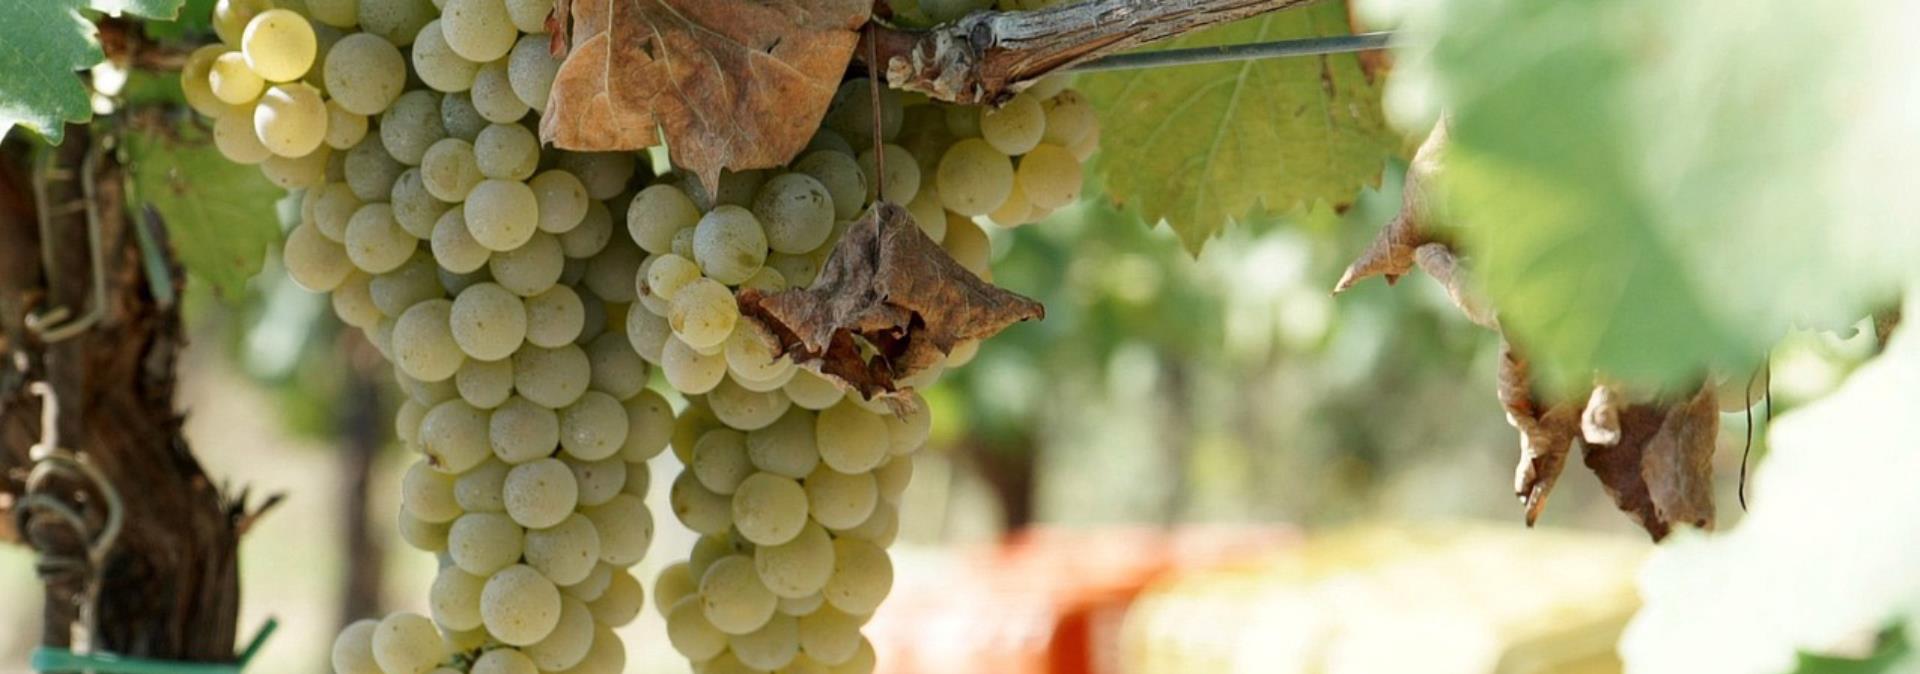 Weinerfahrung in der Toskana: Das Landgut Falzari öffnet wieder für Verkostungen von biodynamischen Weinen.